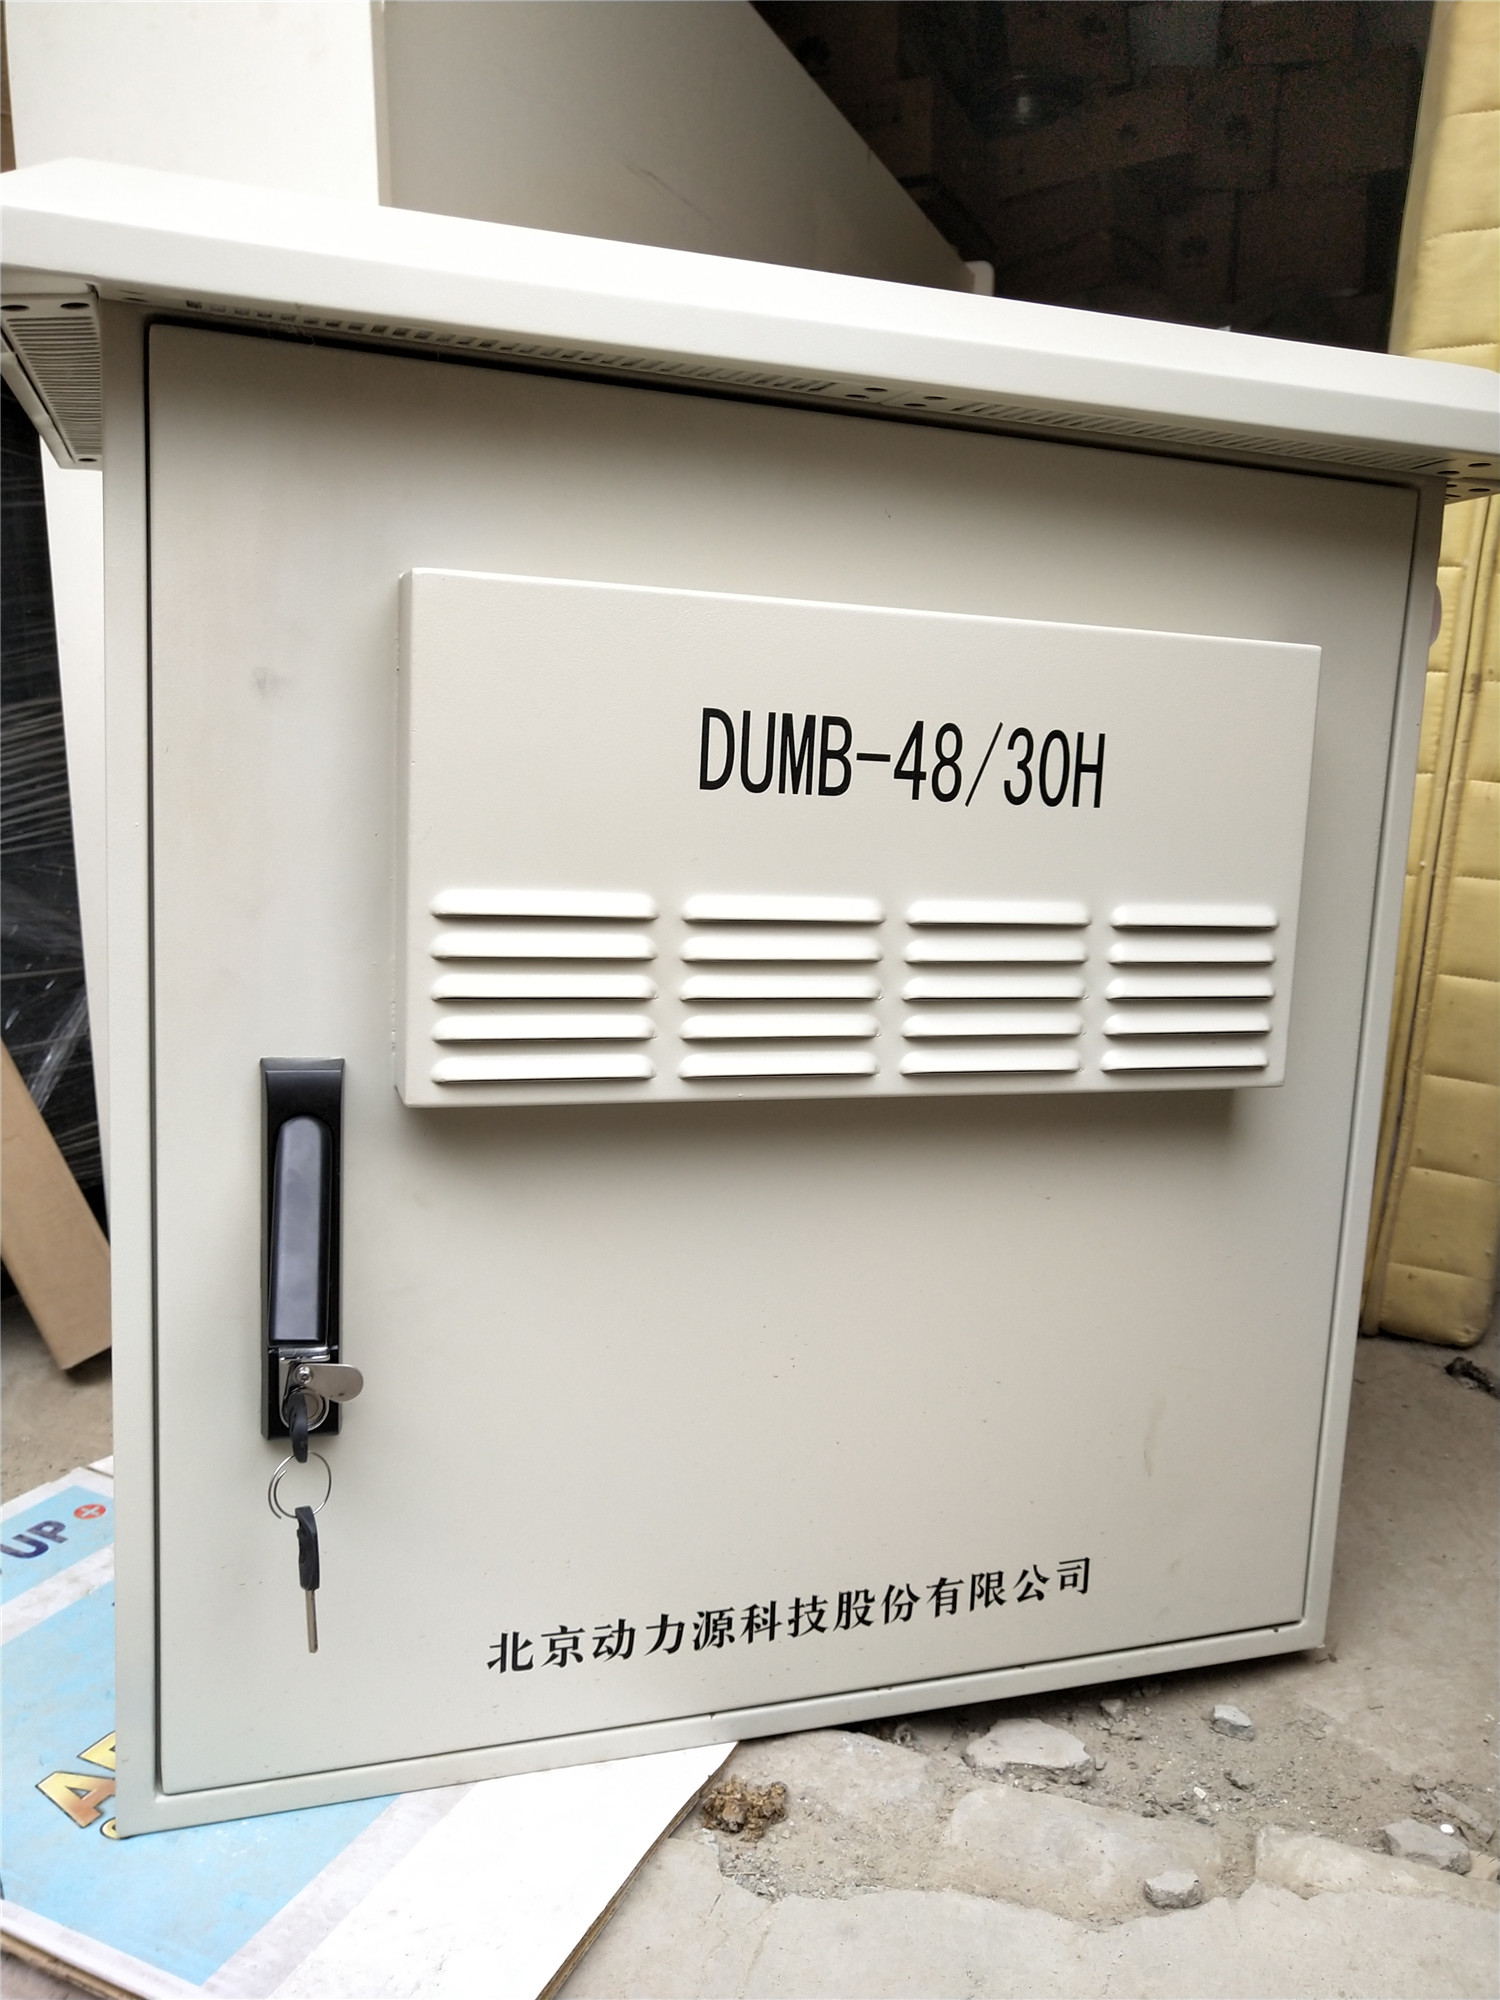 全新动力源DUMB-48-30H动力源室外壁挂式通信电源机柜 DUMB-48-30H,动力源,外壁挂式,通信电源机柜,挂式通信电源机柜